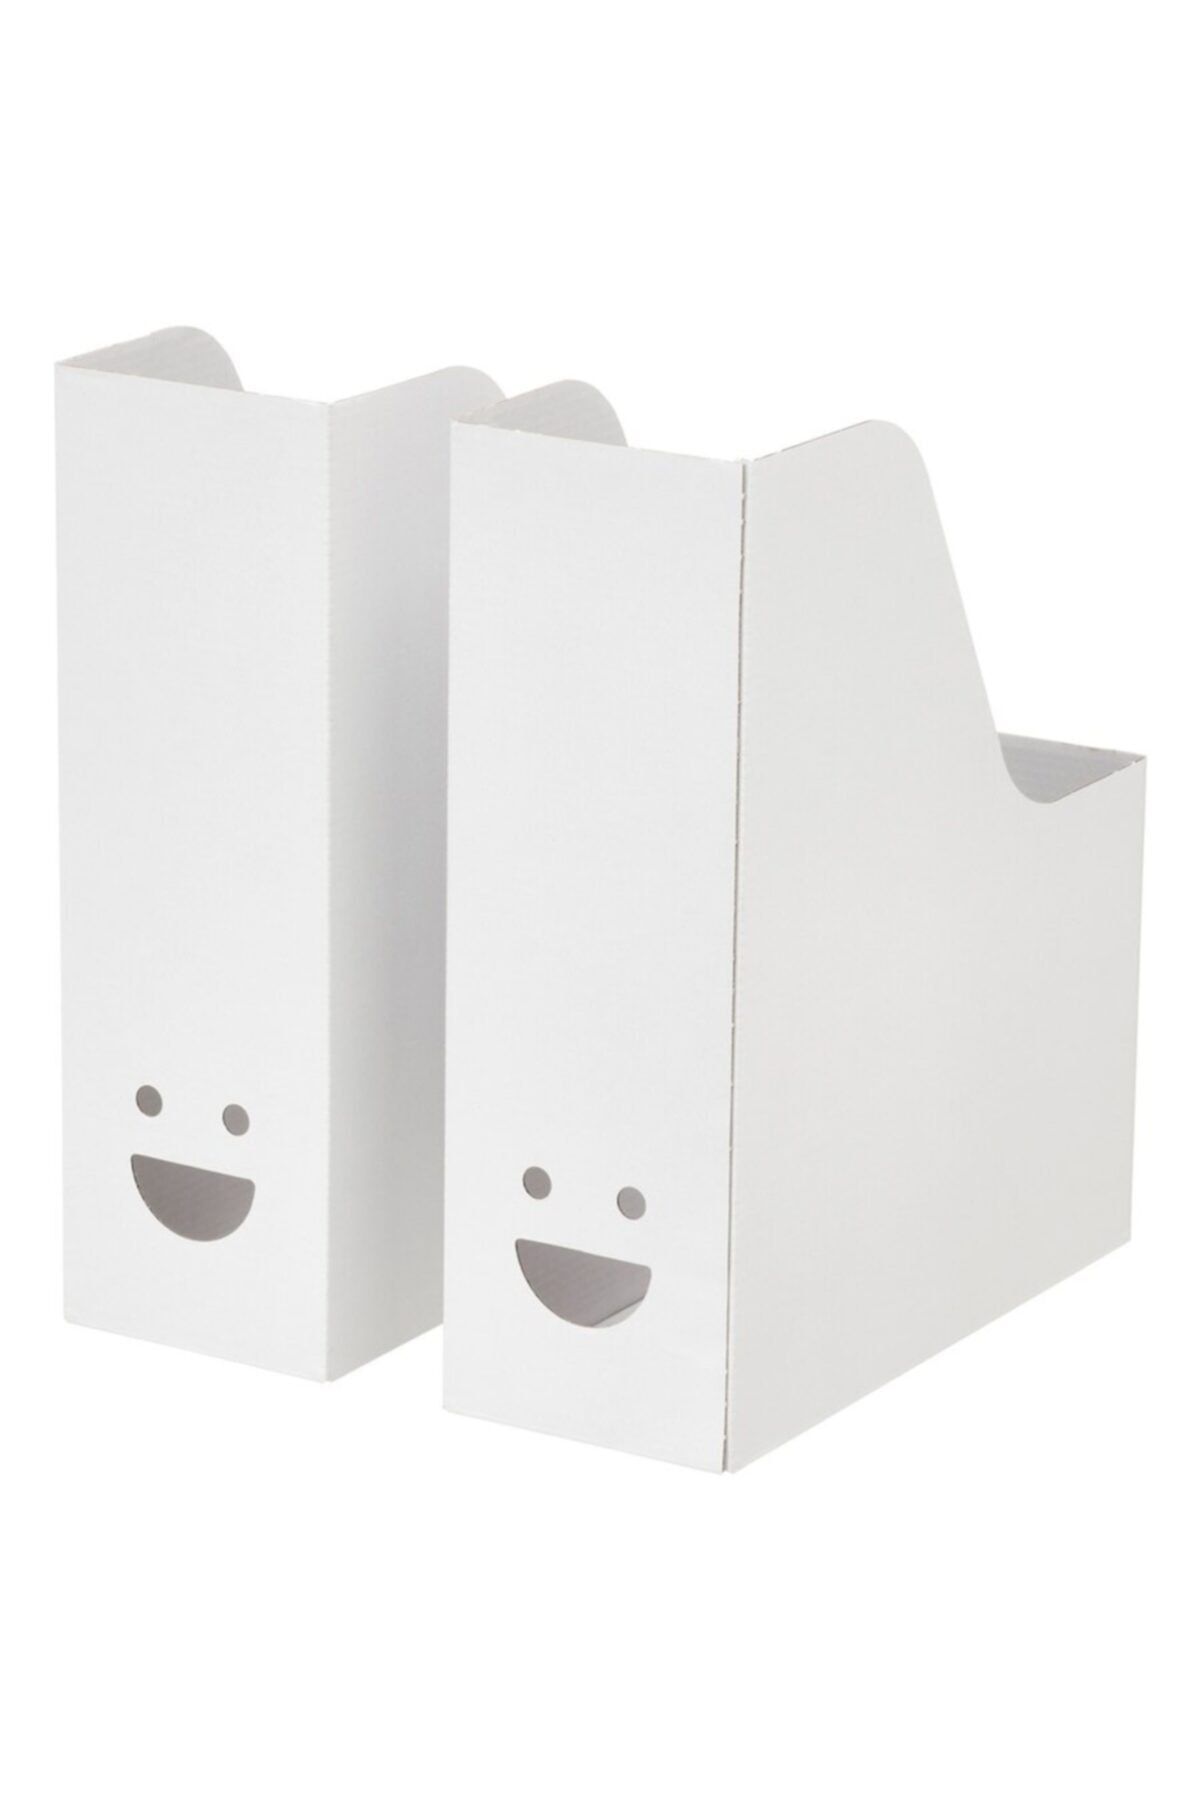 IKEA Tjabba Gülen Yüz 2 Li Set Beyaz Kutu Klasör Dosyalık Magazinlik Evrak Dergi Dosyası 2 Adet